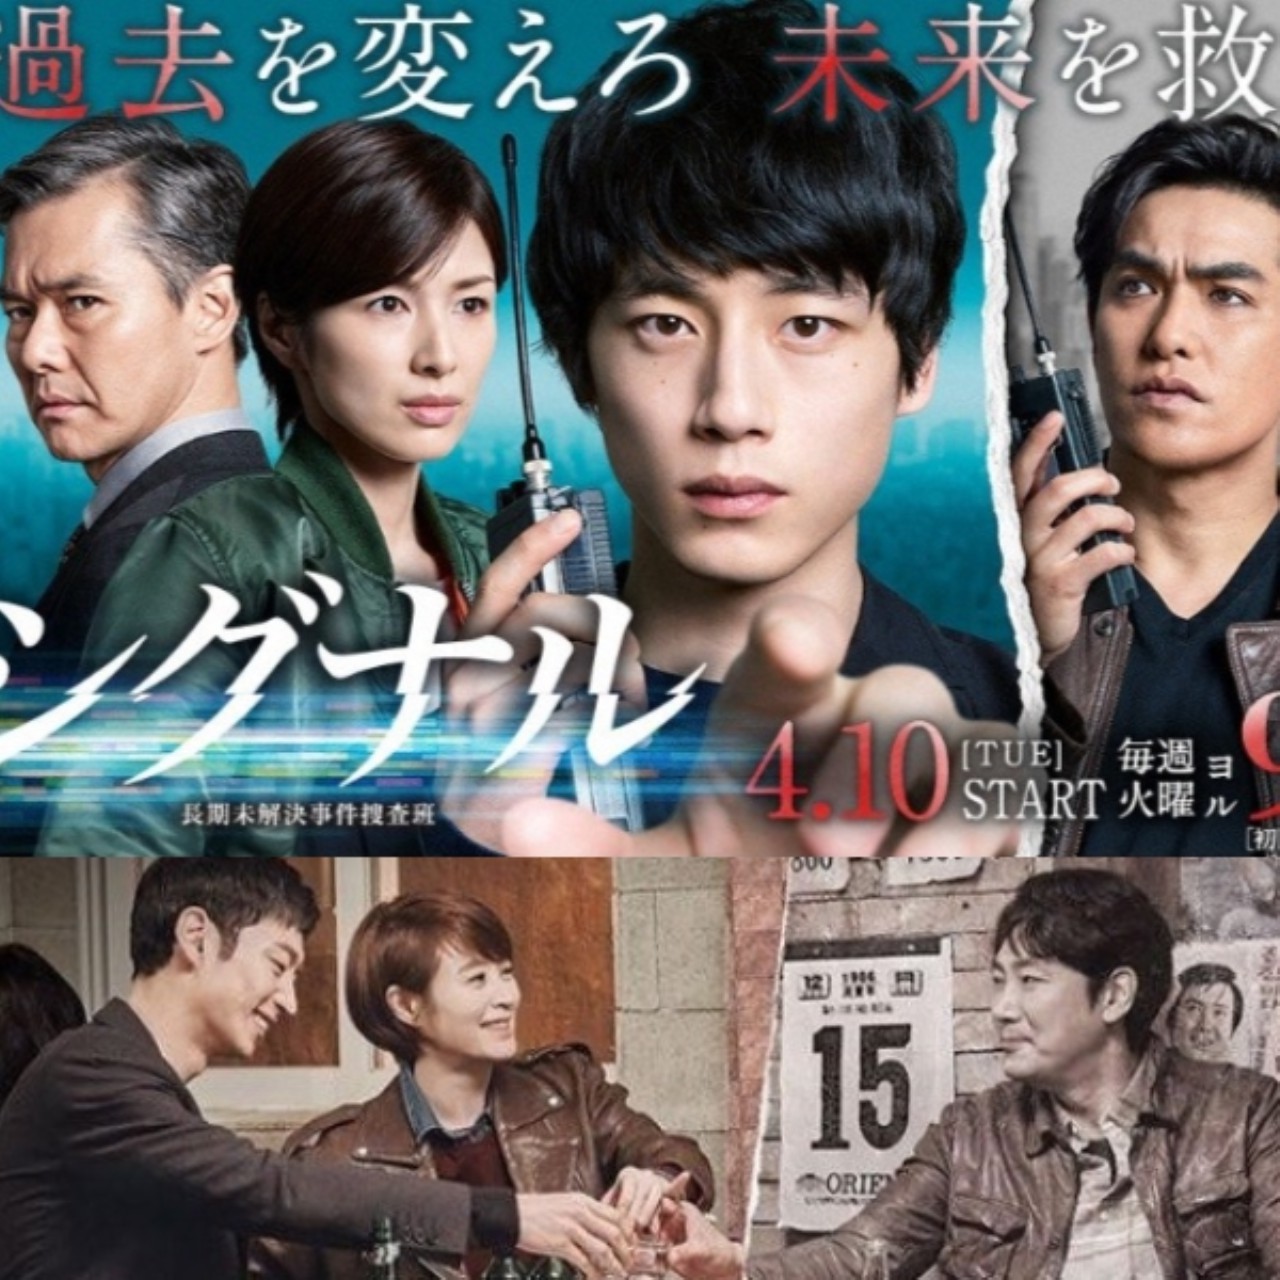 시그널 포스터  한국과 일본 드라마 홈페이지를 장식하고 있는 메인 포스터